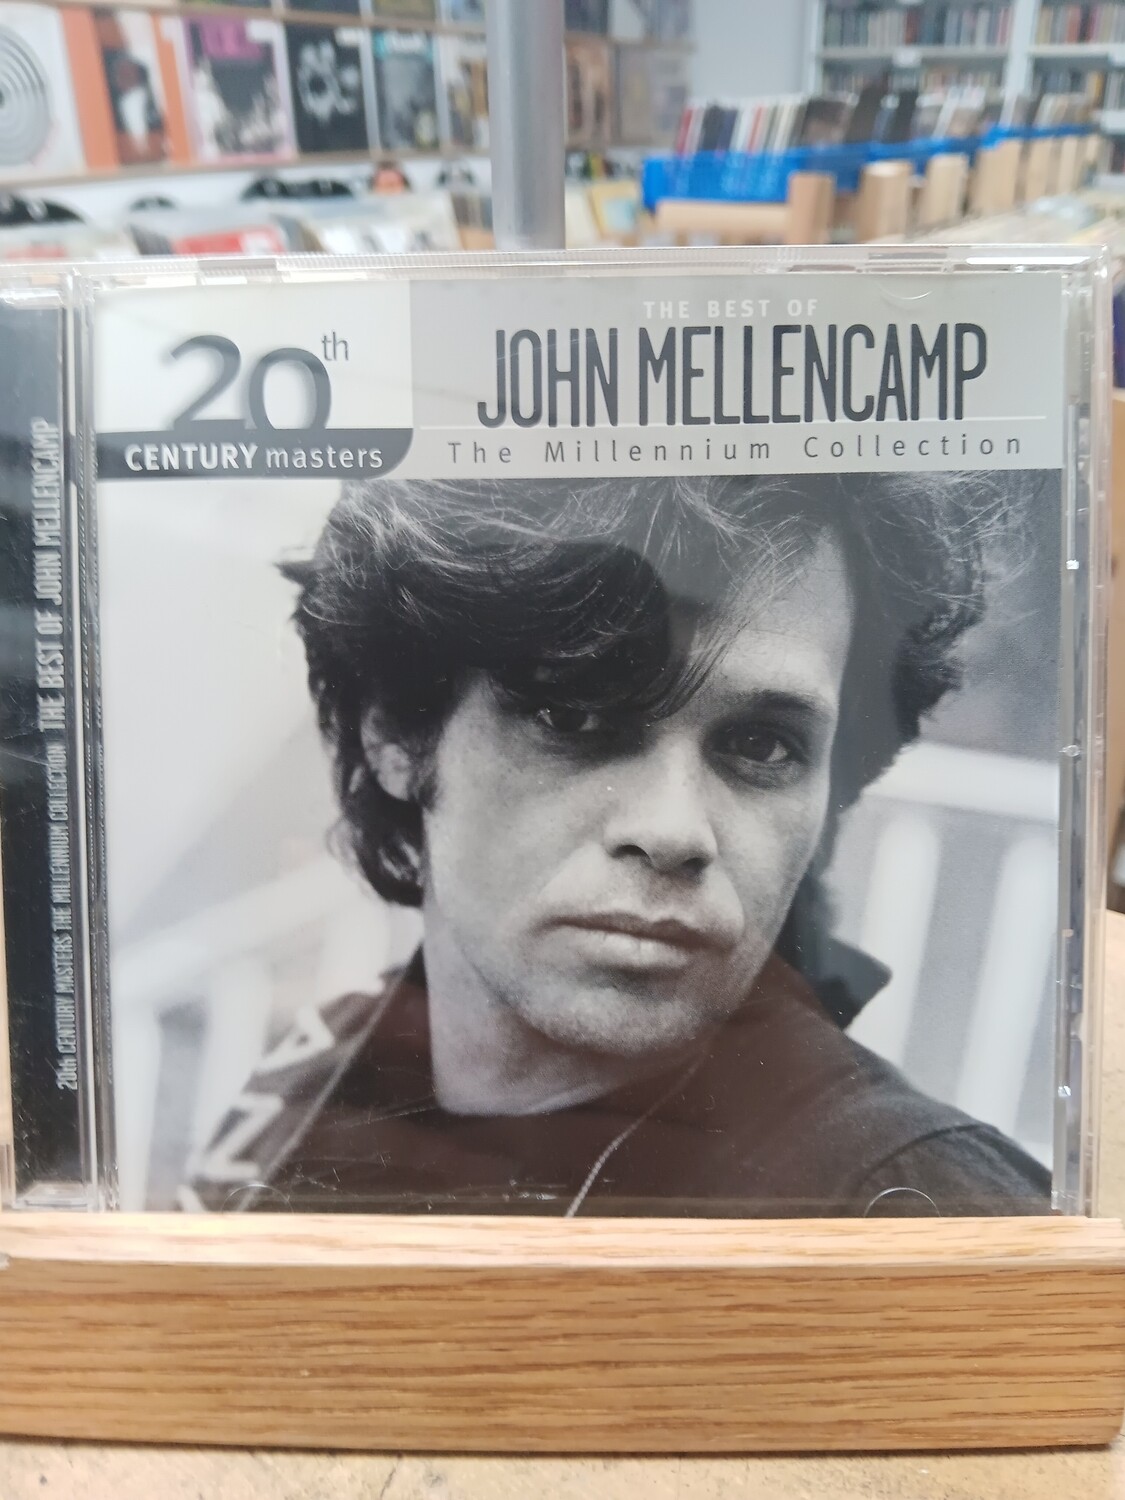 JOHN MELLENCAMP - THE BEST OF (CD)